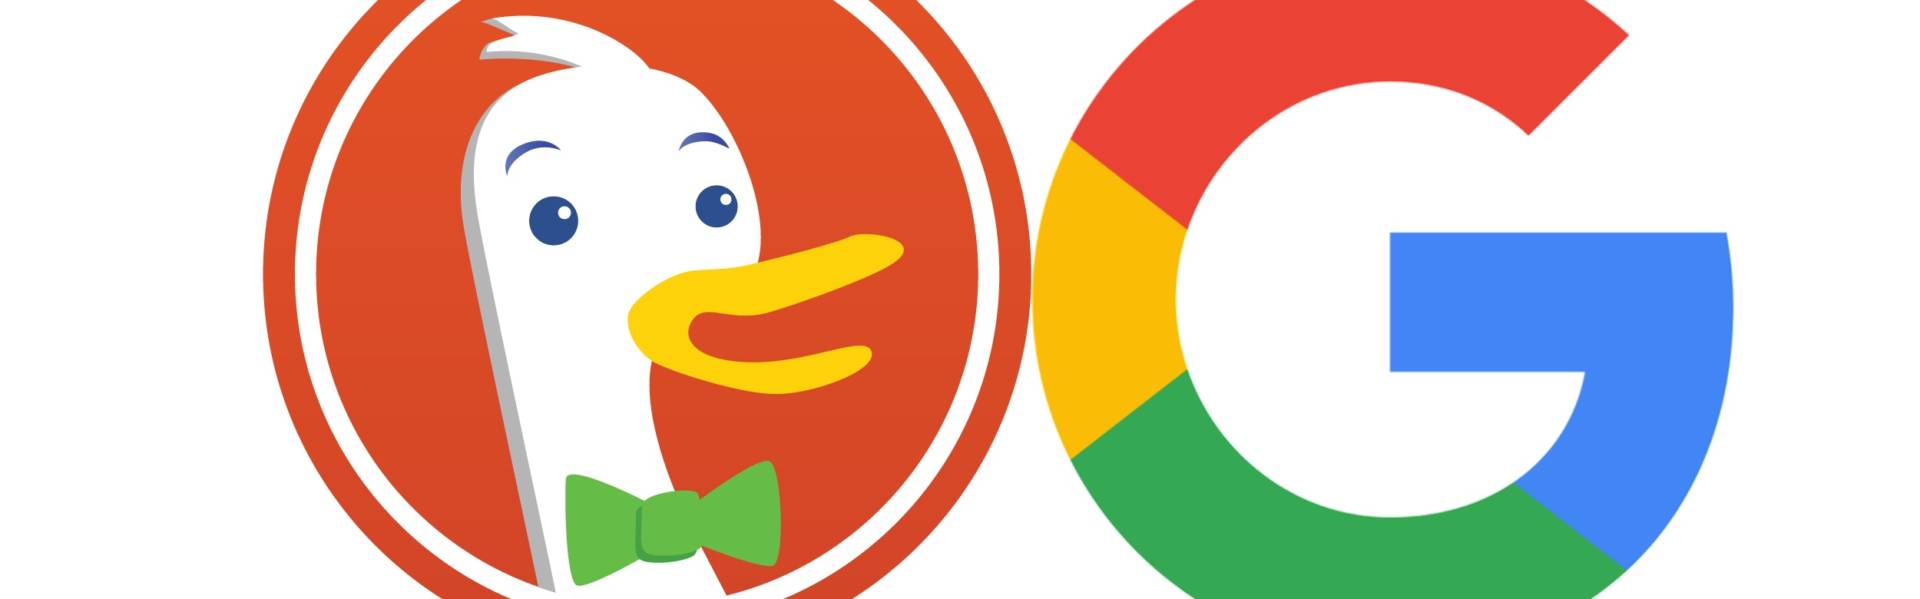 Come abbandonare Google e passare a DuckDuckGo